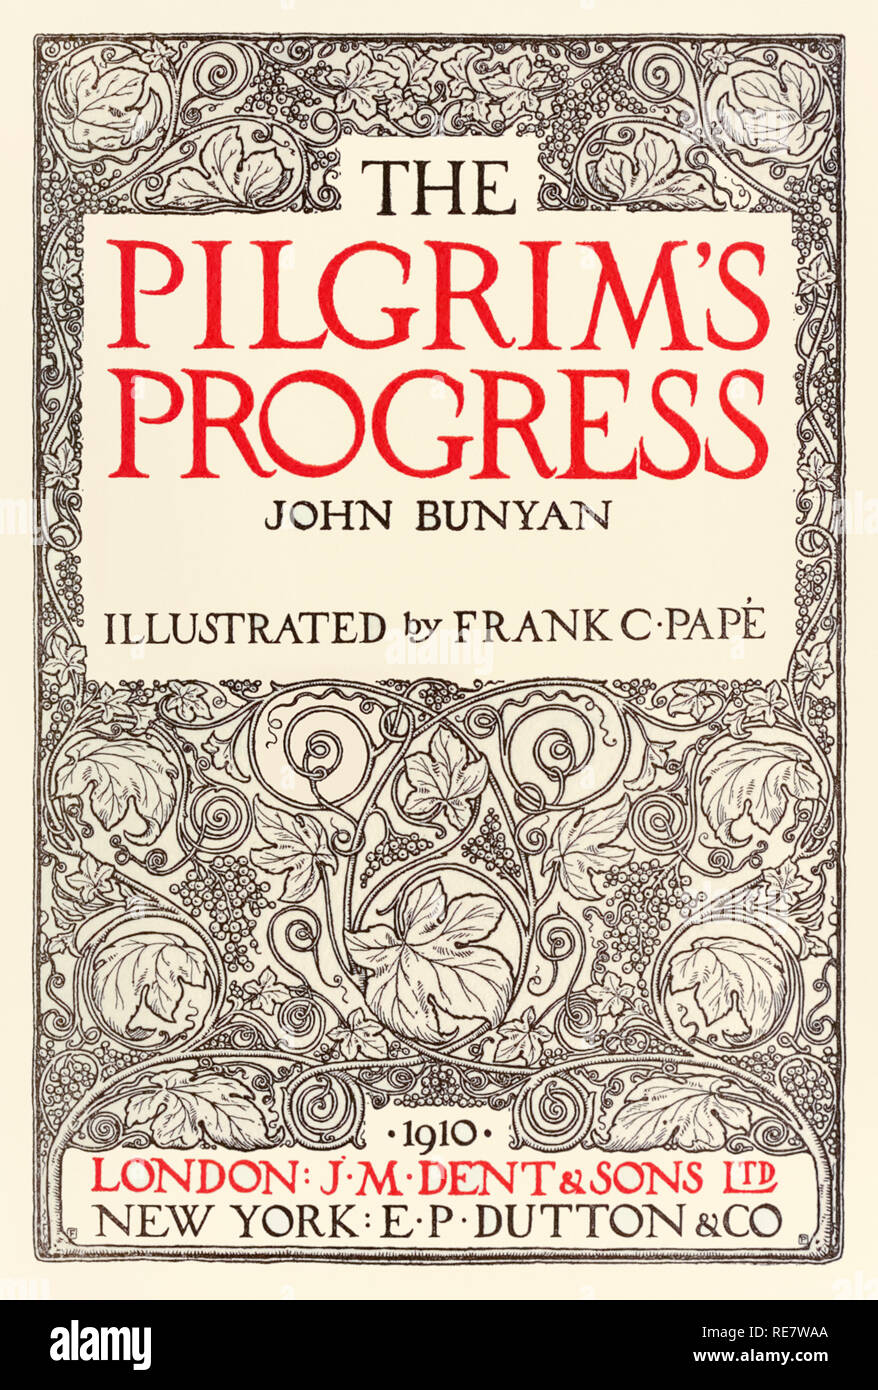 Página del título de "El Progreso del Peregrino" por John Bunyan (1628-1688) diseñado por Frank C. Papé (1878-1972) y publicados por J. M. Dent en 1910. Ver más información a continuación. Foto de stock